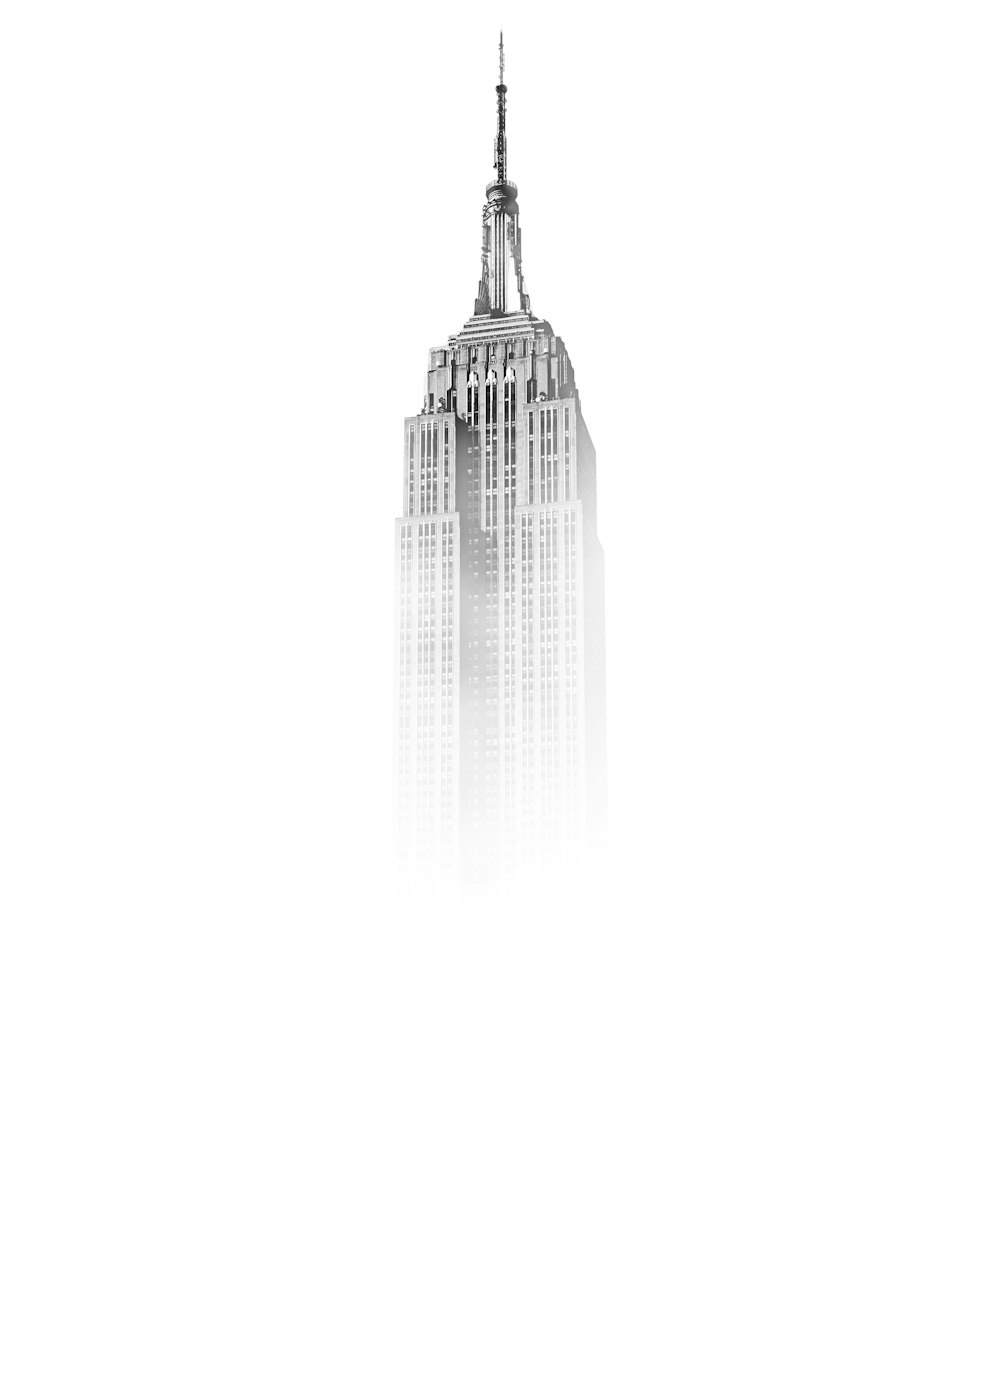 Schizzo dell'Empire State Building